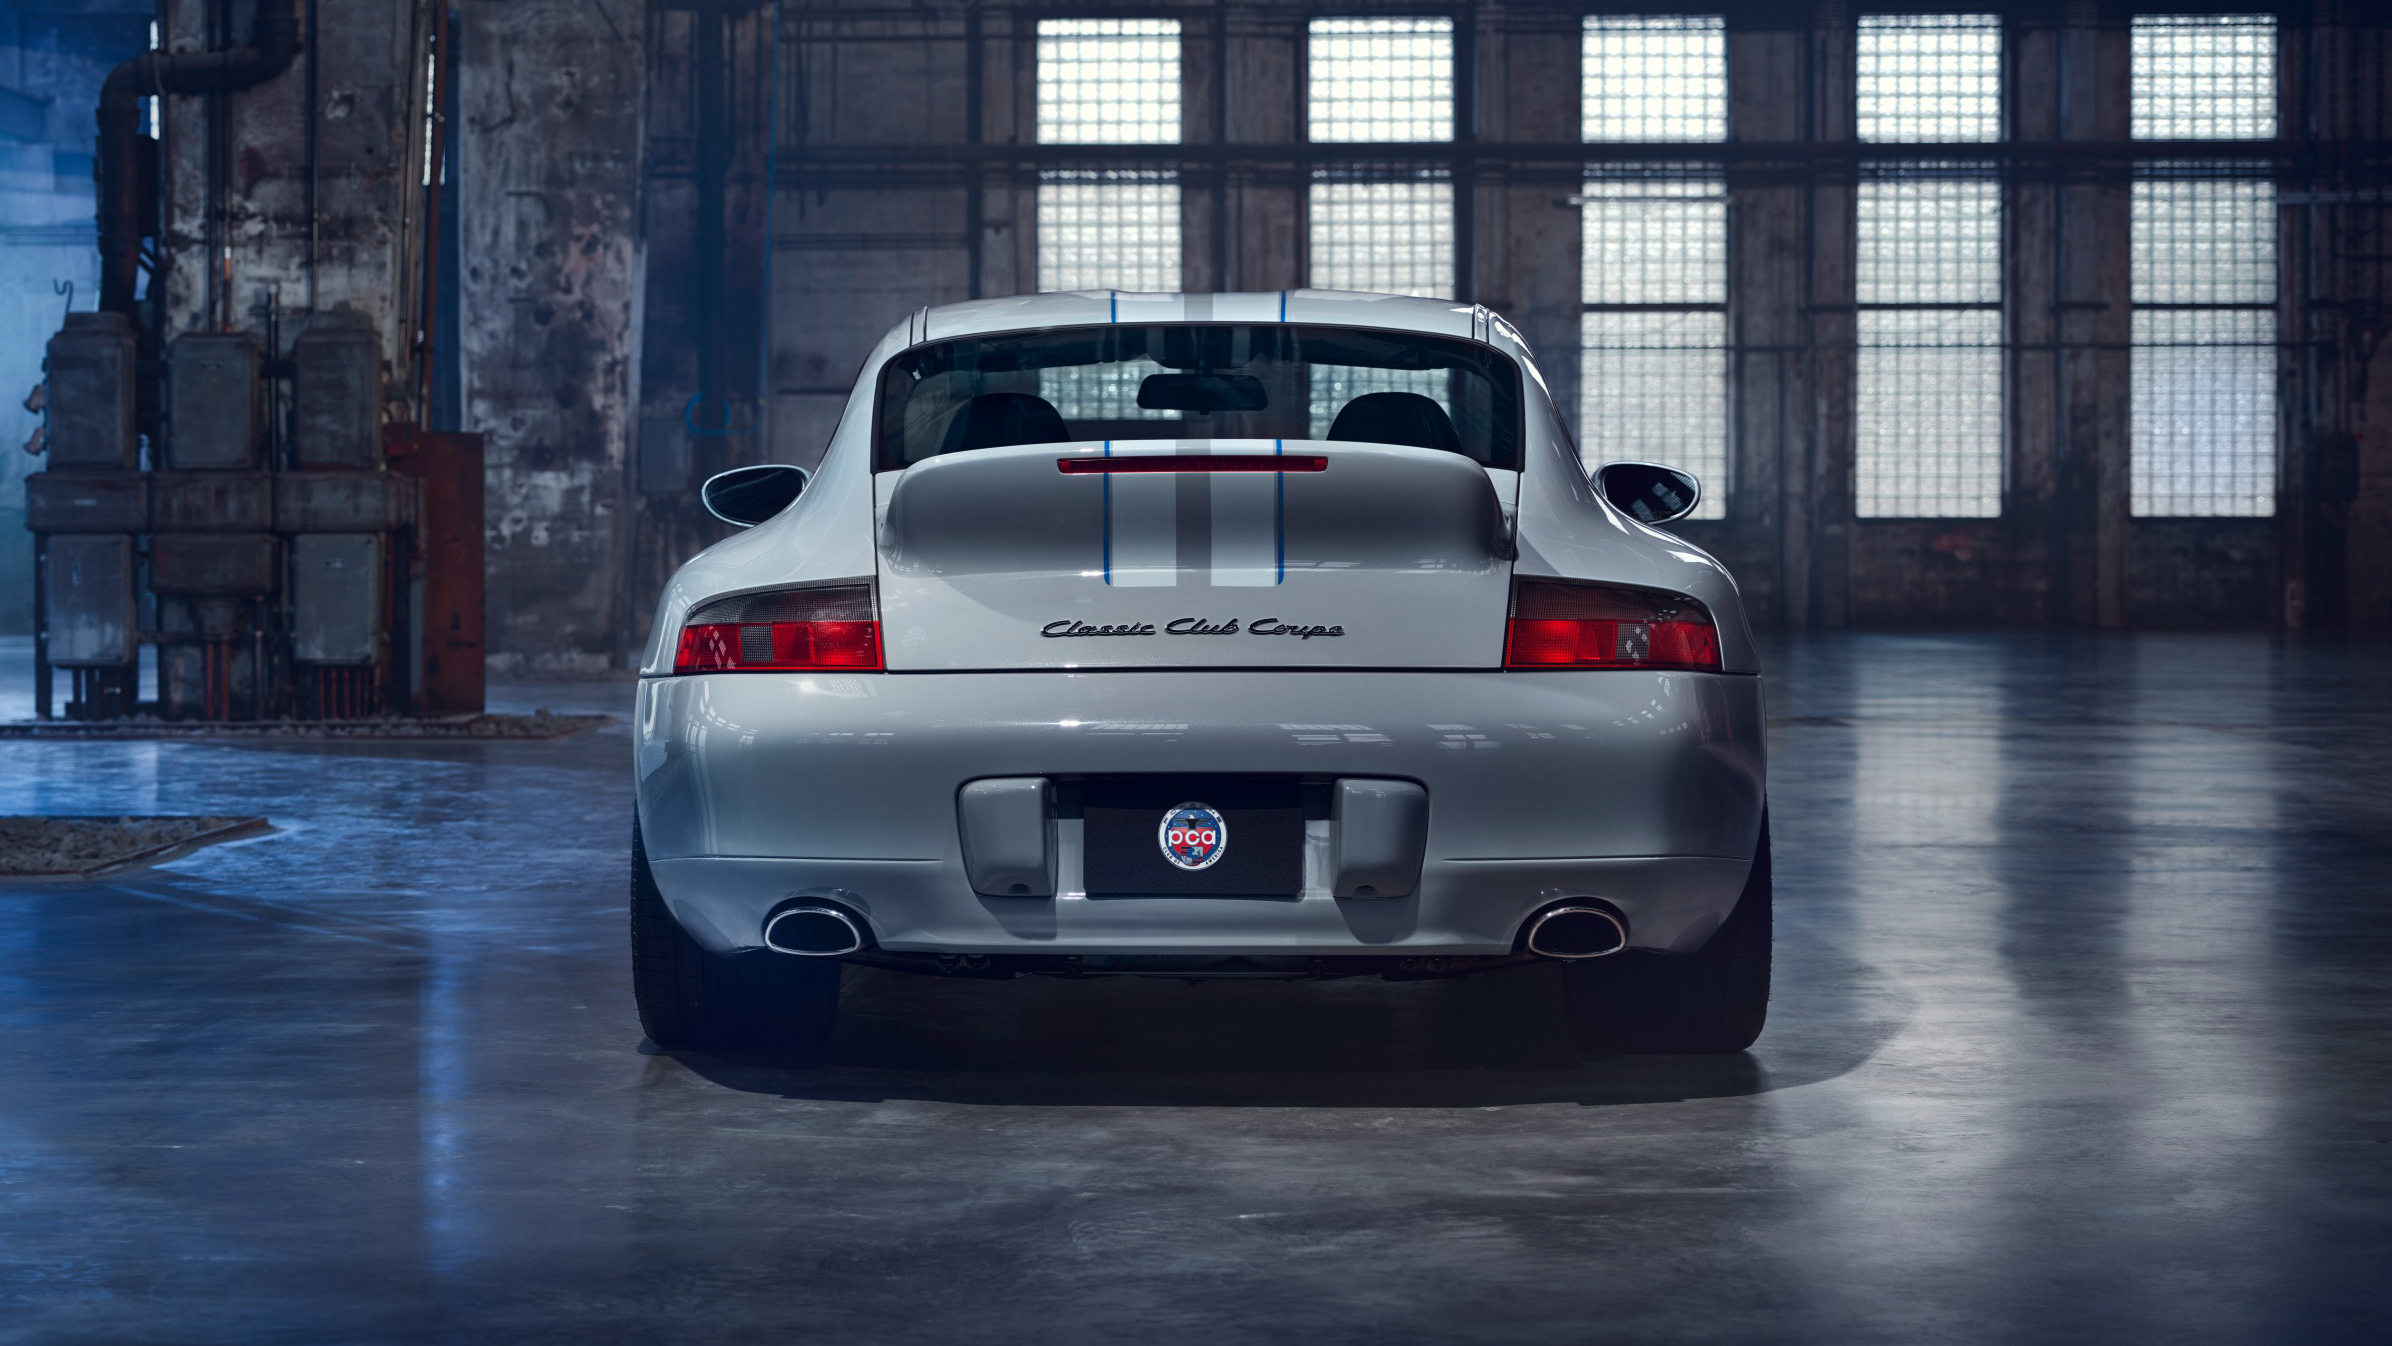 £1M+ sale of unique Porsche elevates an underappreciated 911